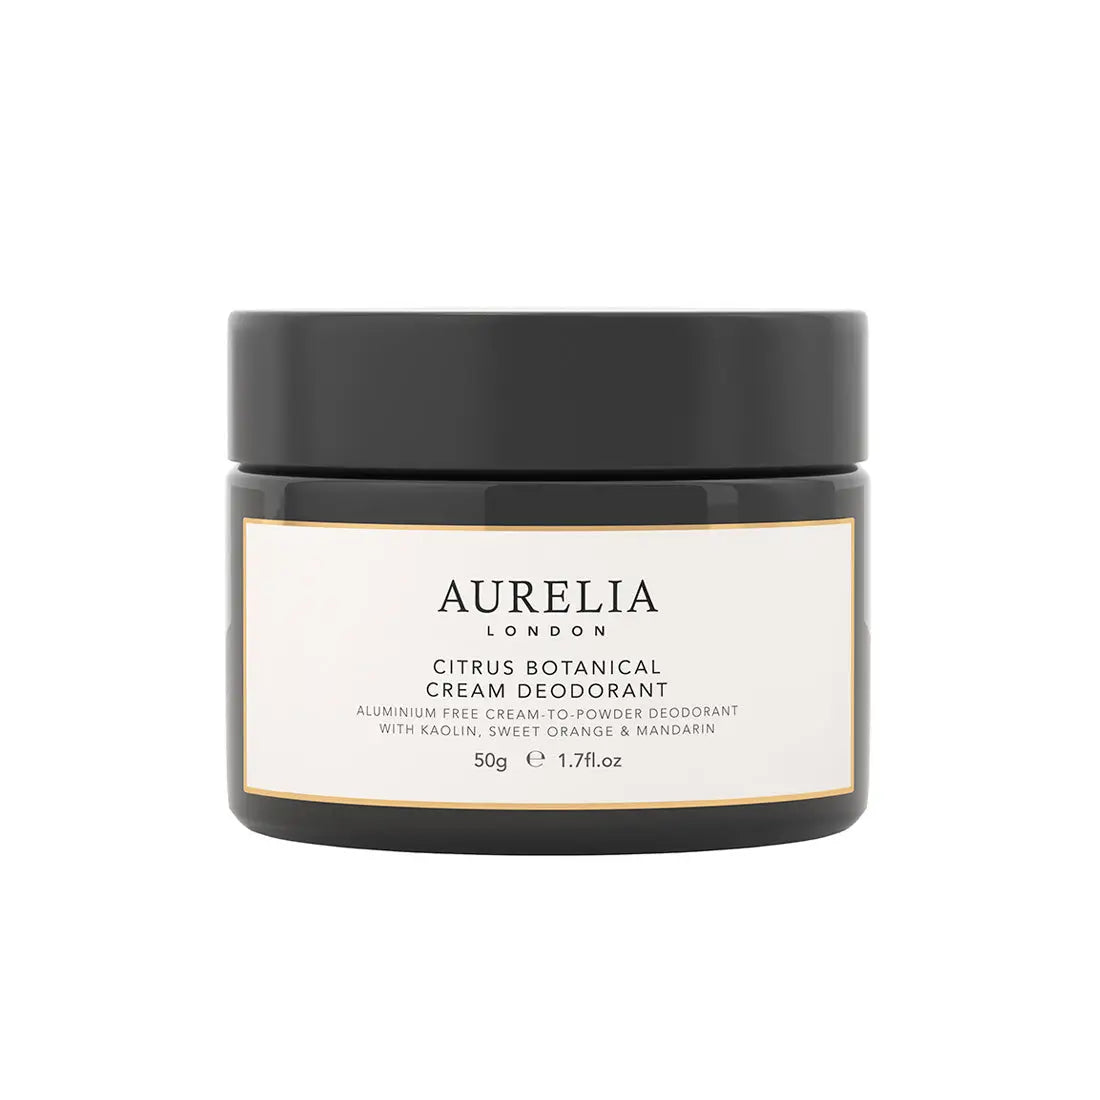 Aurelia London Citrus Botanical Cream Deodorant 50g - Free 